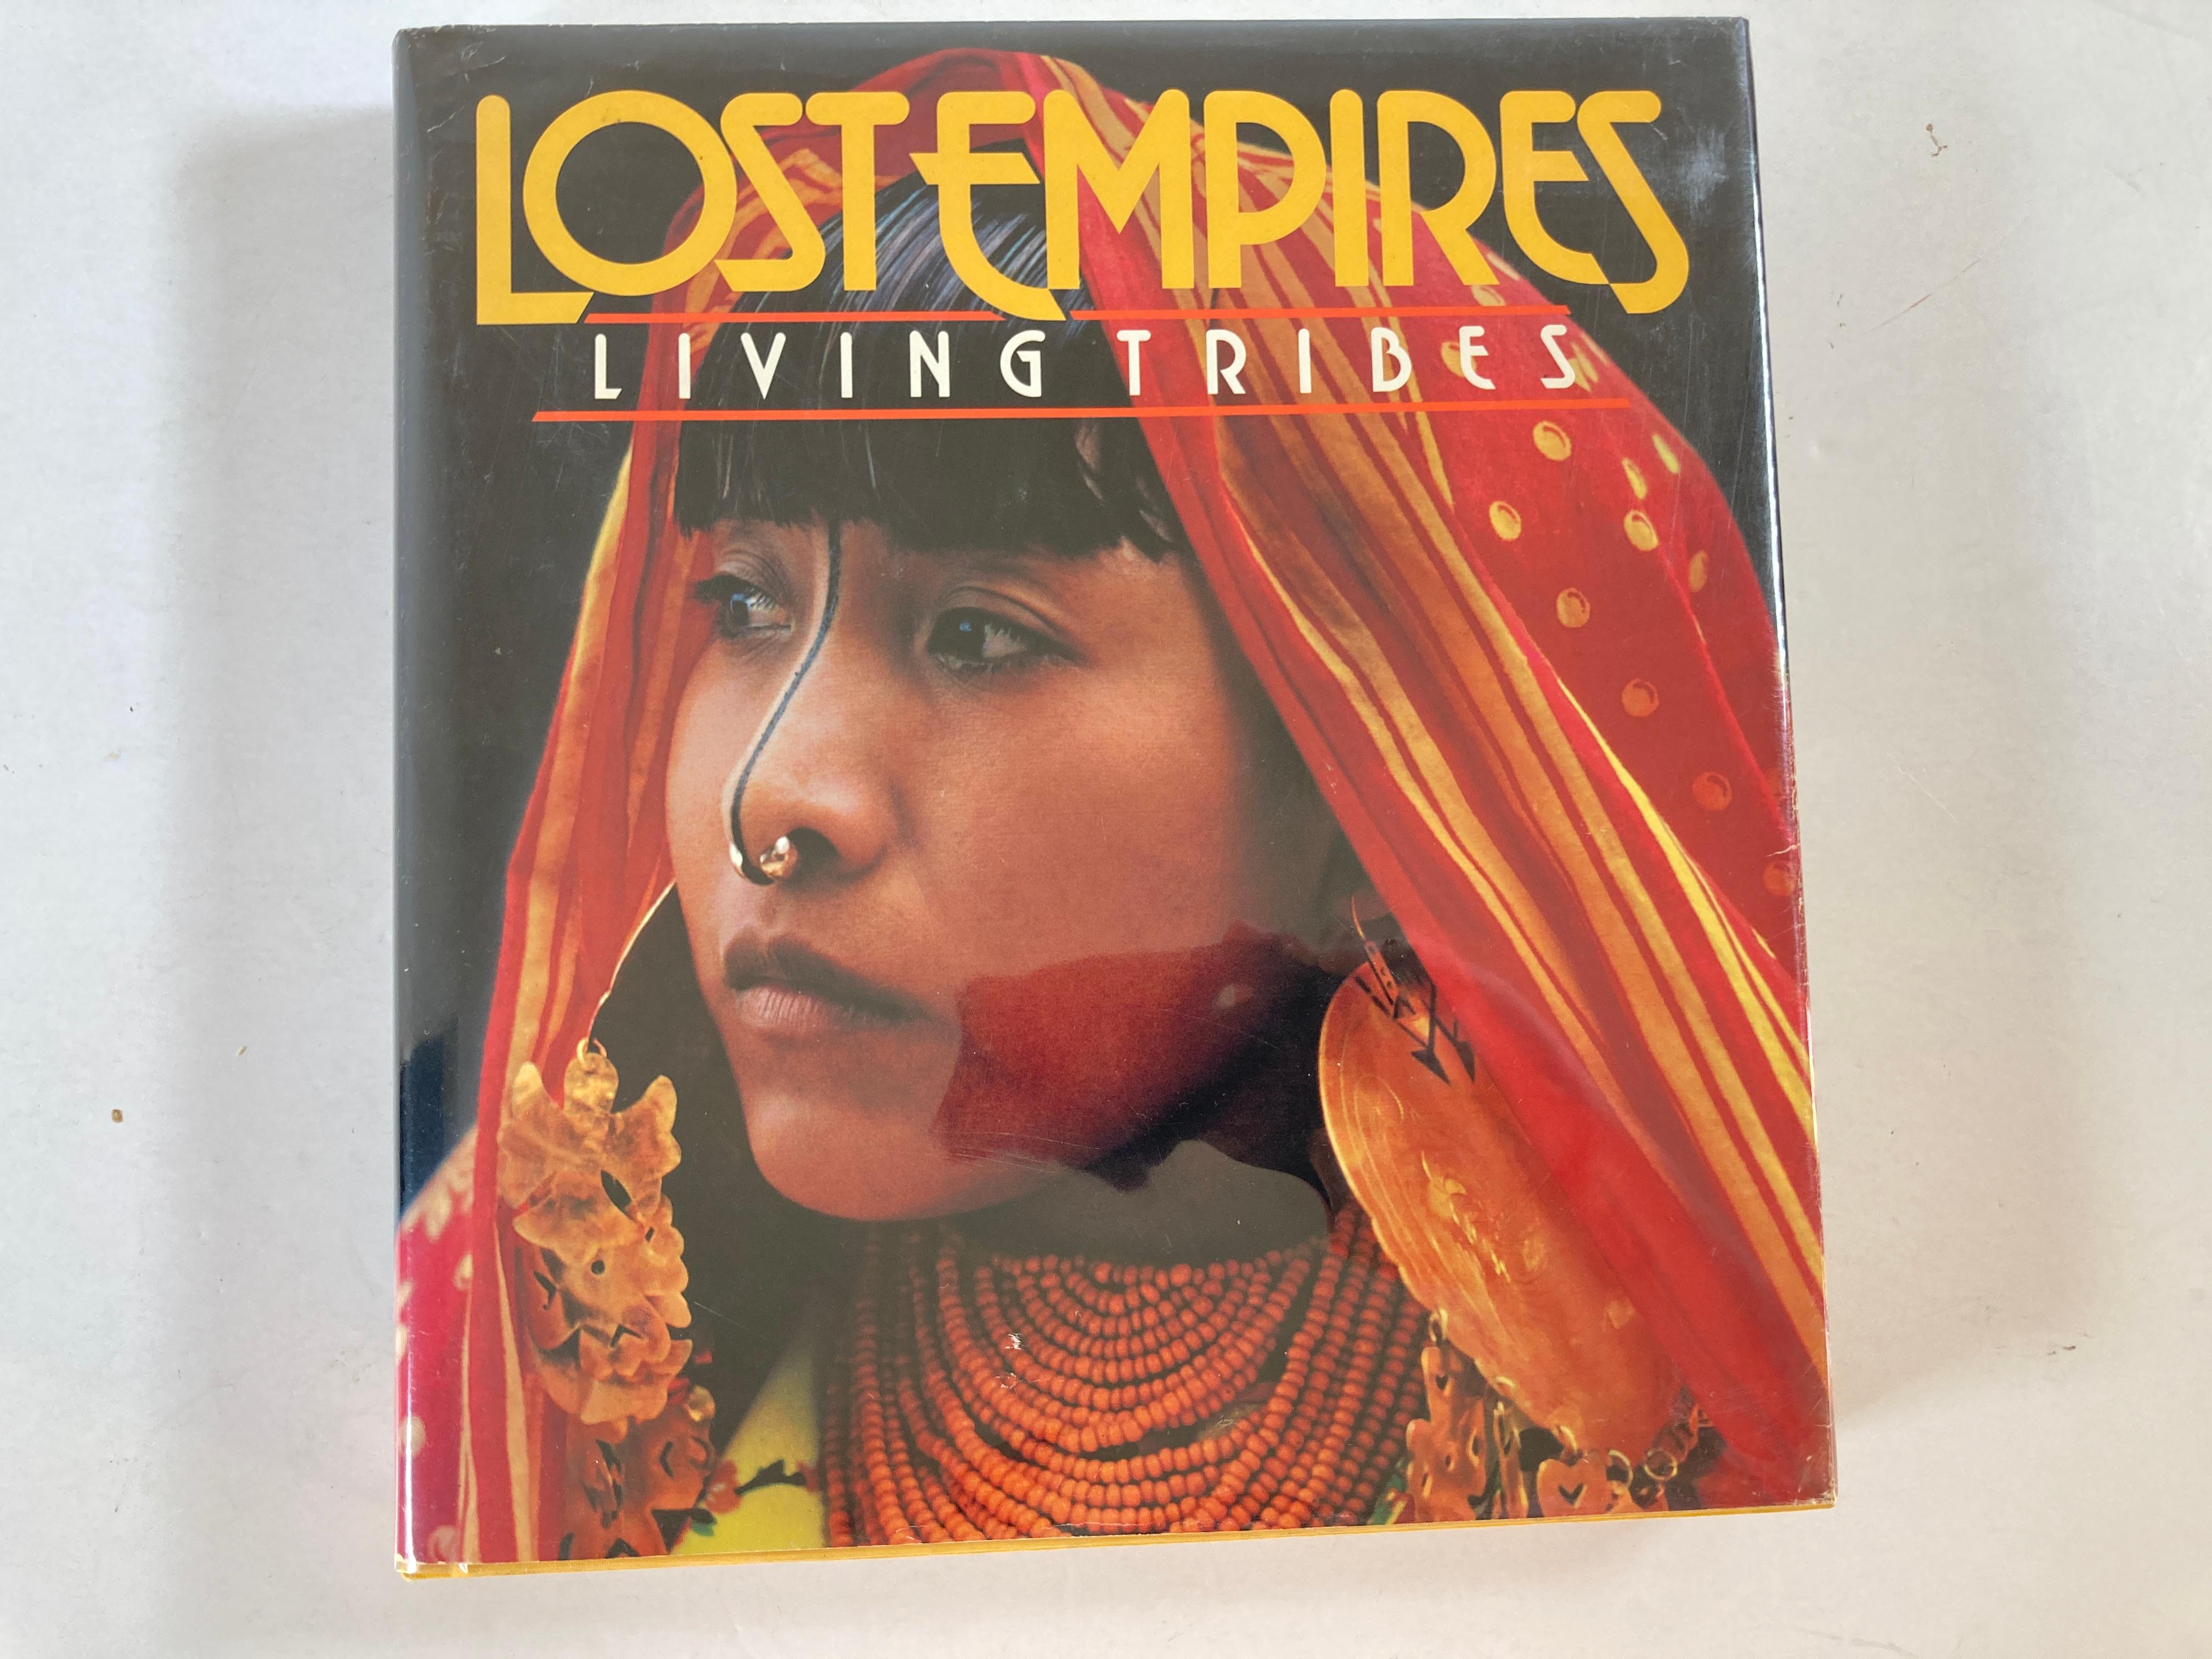 Empires perdus : Living Tribes par Ross S. Bennett
Couverture rigide, 402 pages
Publié le 1er novembre 1982 par la National Geographic Society.
Couverture rigide ; Washington, D.c. :
Il s'agit d'un beau grand livre d'art et de